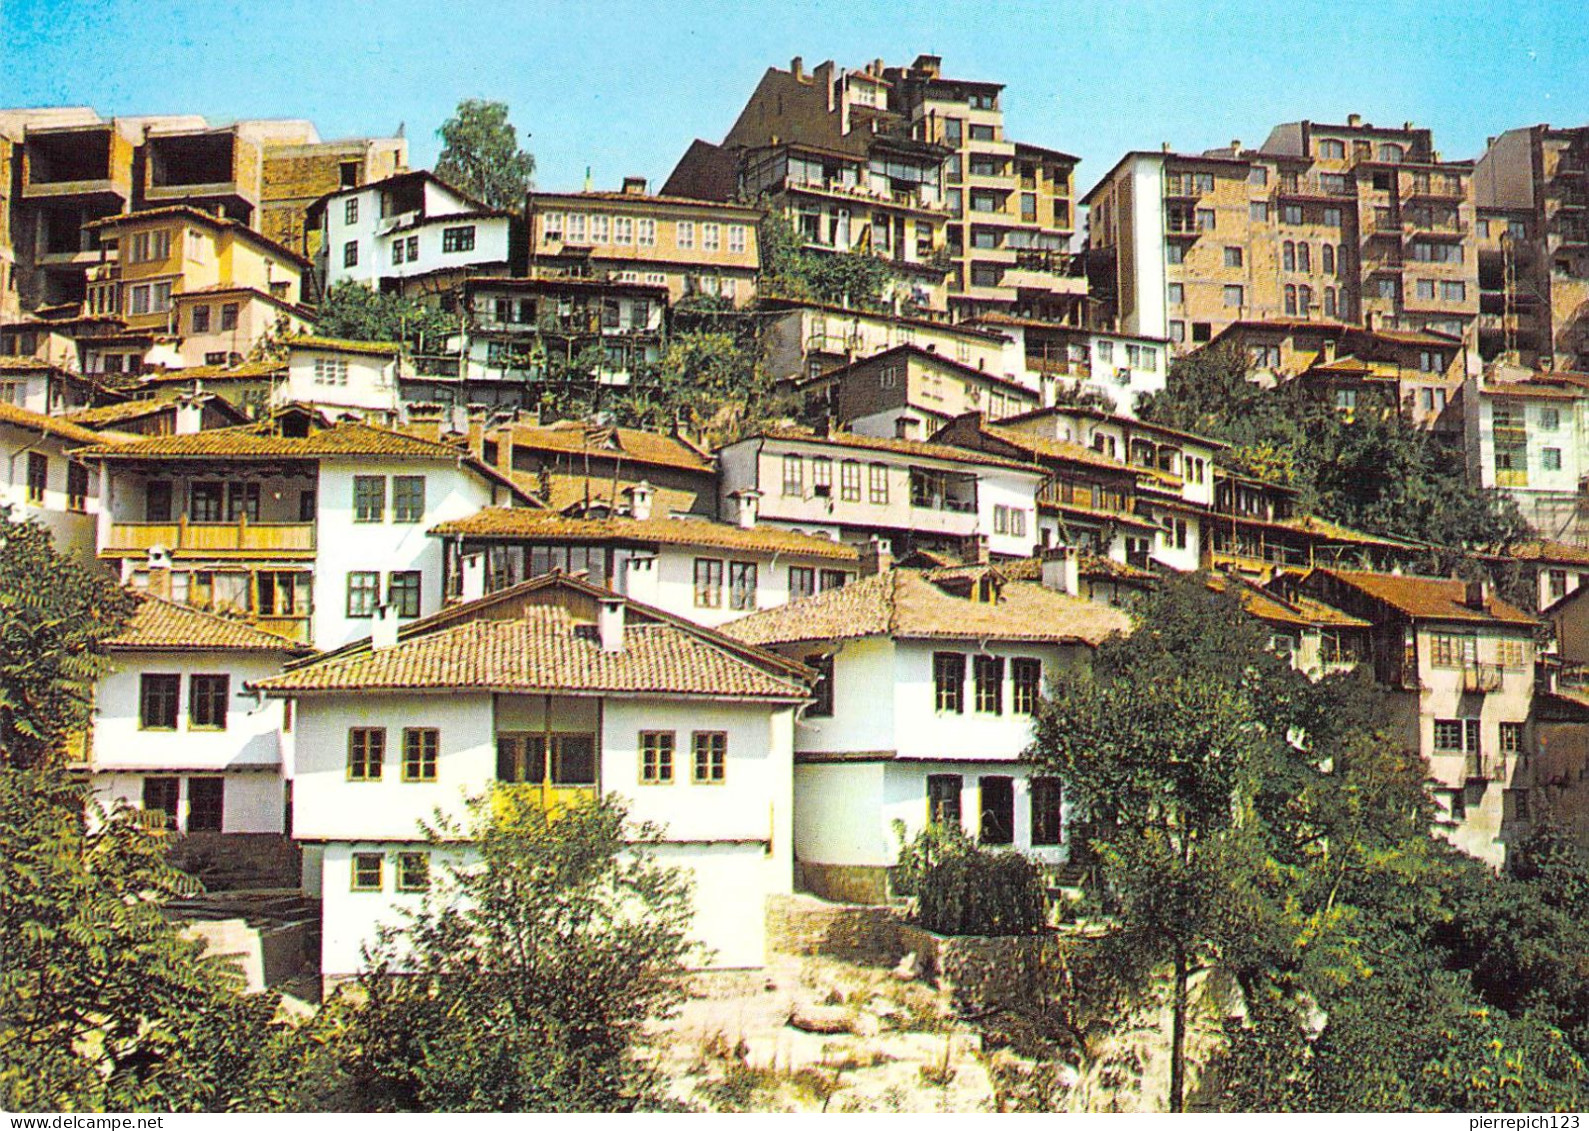 Veliko Tarnovo - Vue Sur La Ville - Bulgarie